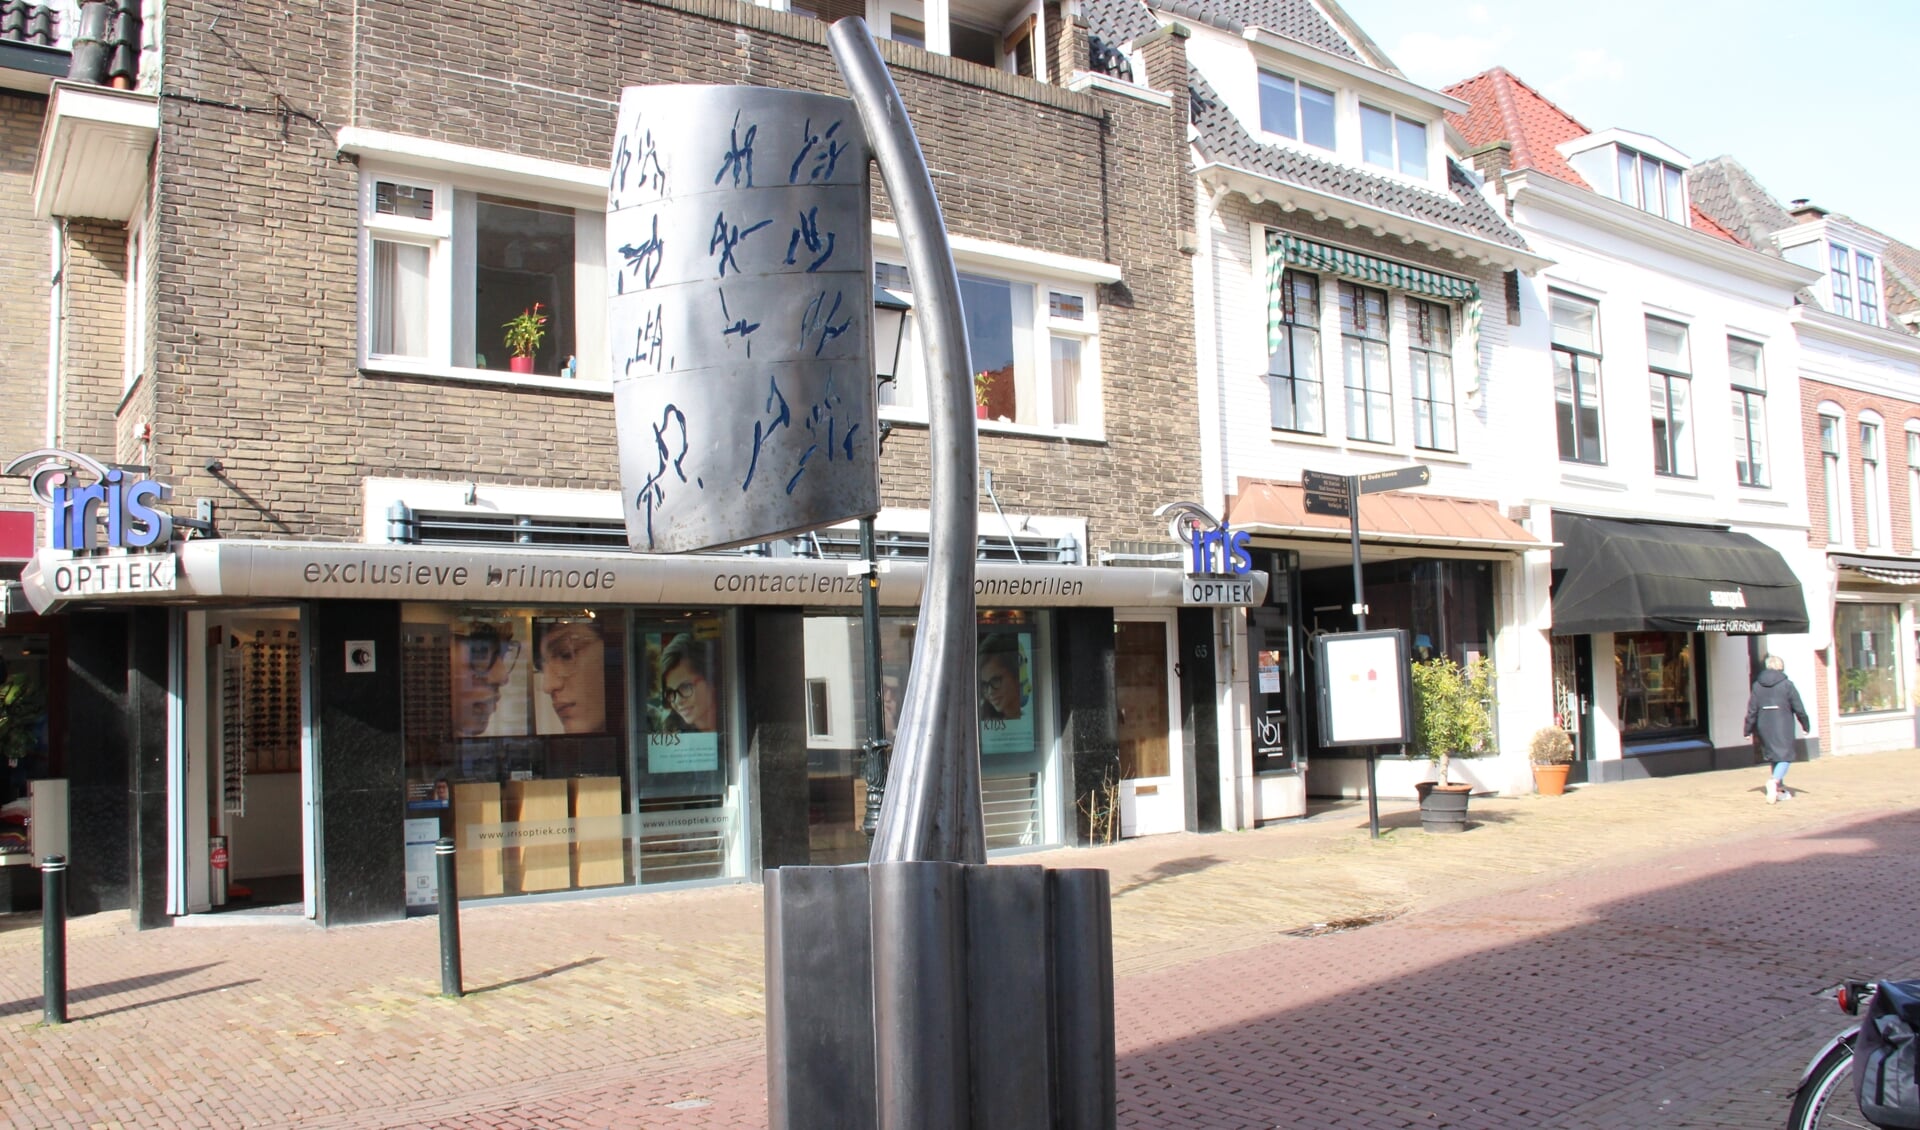 Sleutel tot…, Pim van der Maas, Herenstraat 52 Voorburg Oud, 2002 (foto: Marian Kokshoorn).